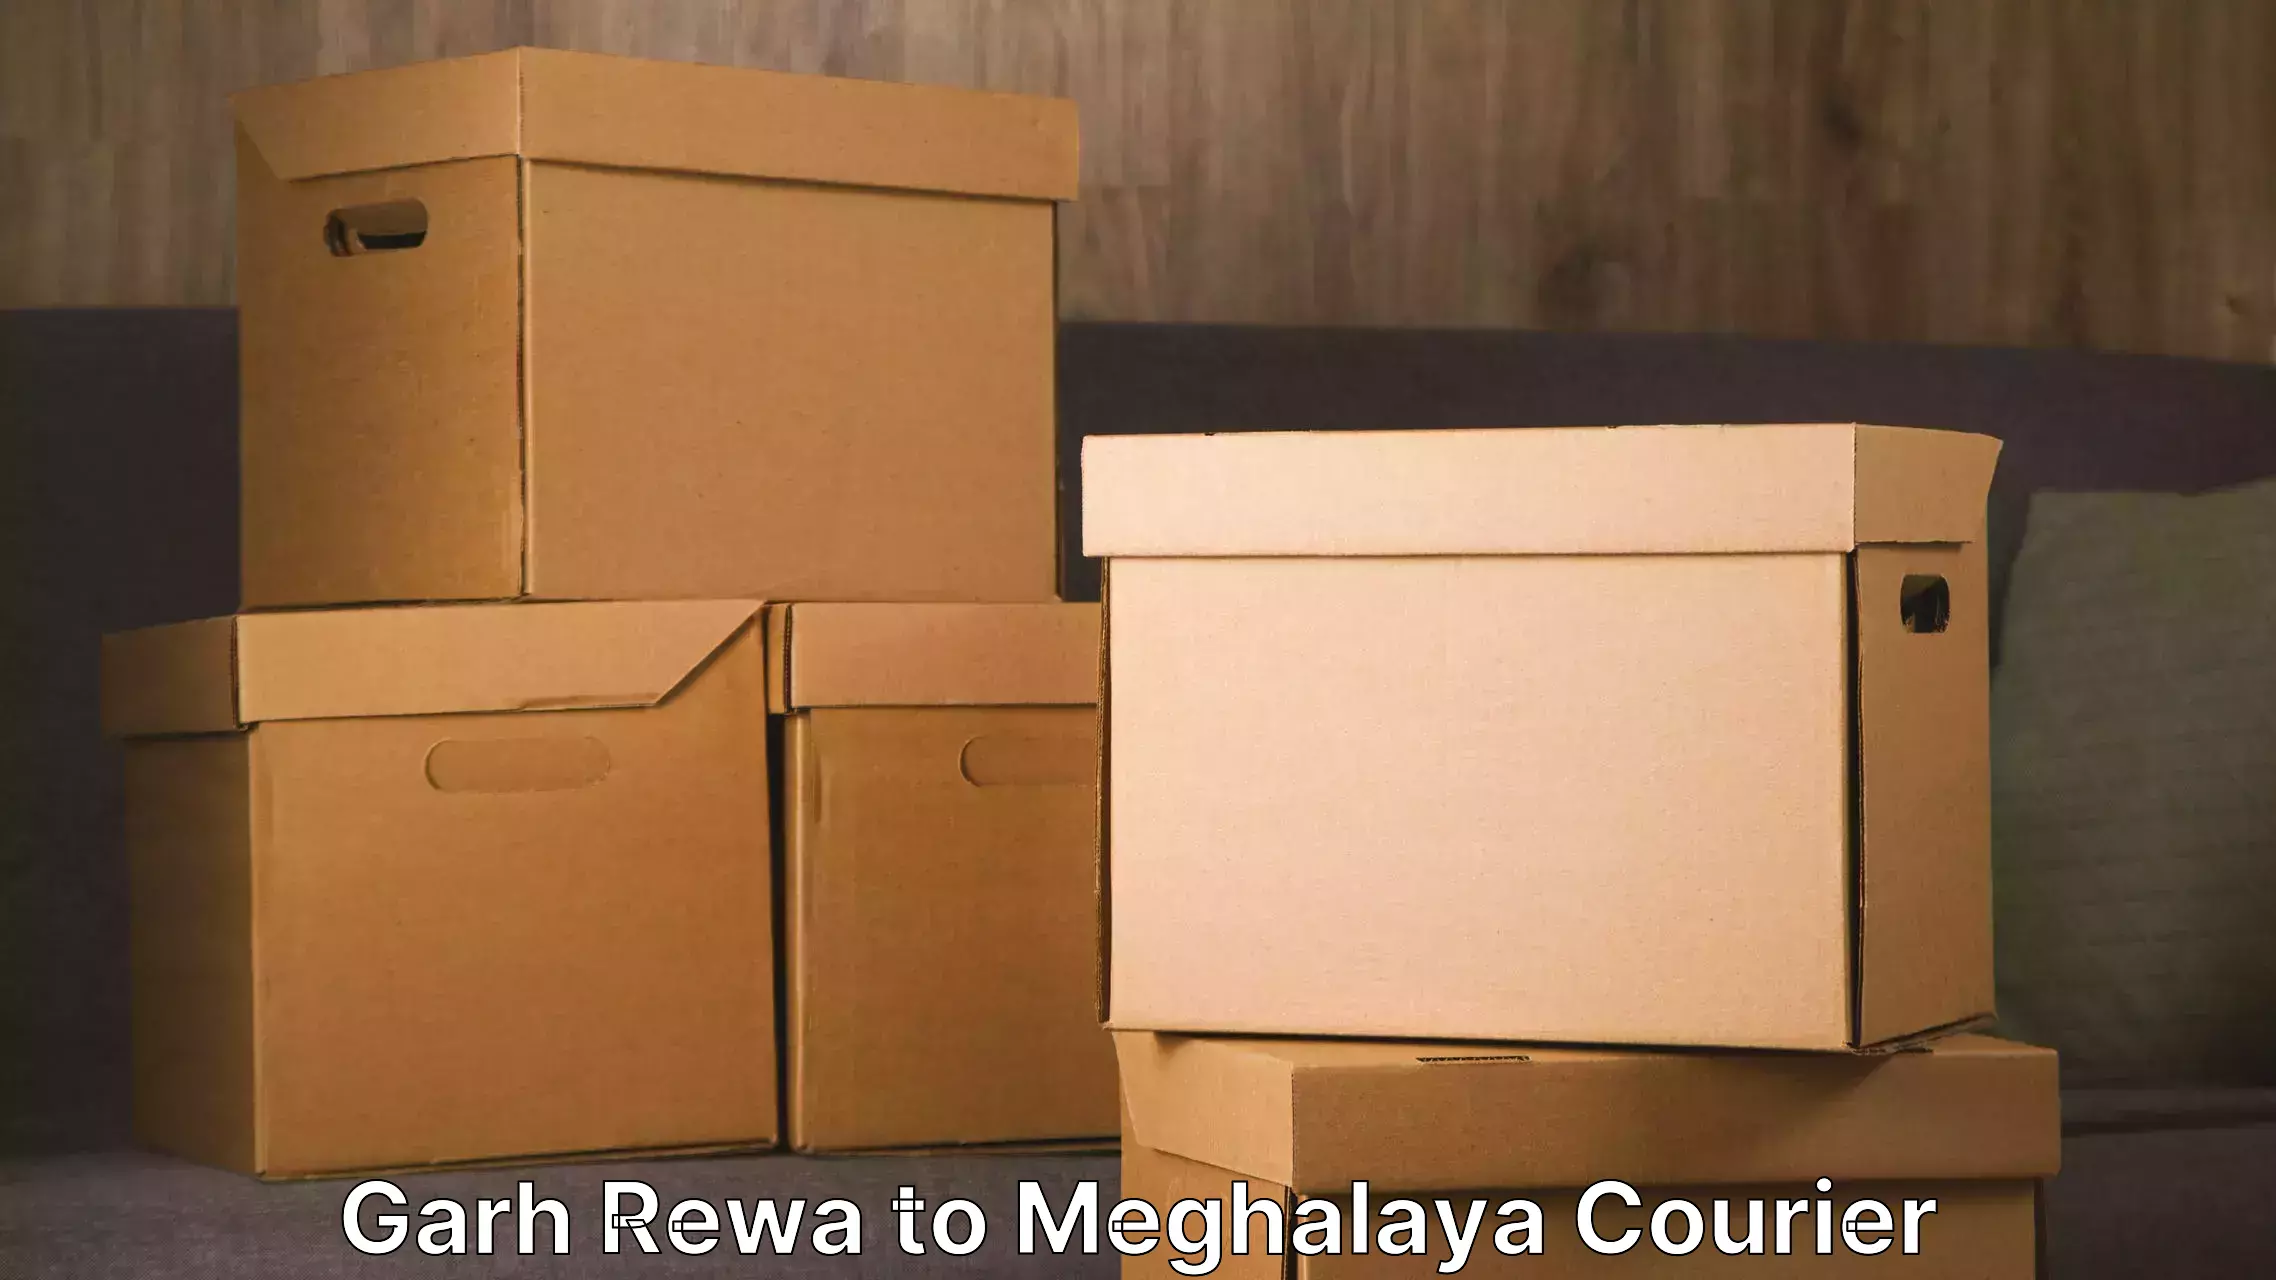 Household moving experts Garh Rewa to Meghalaya